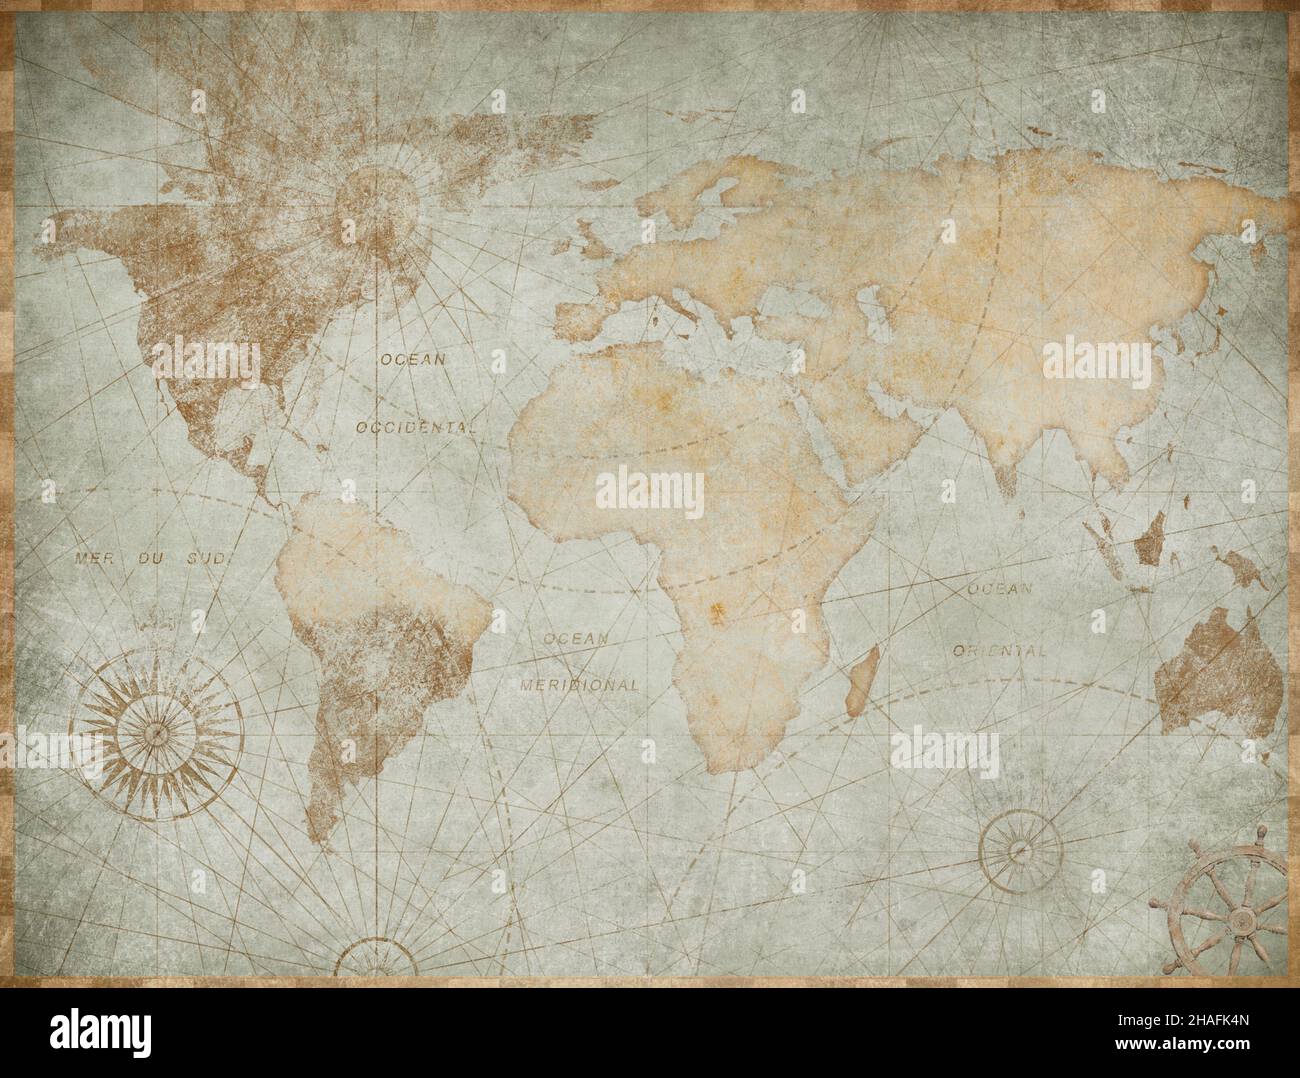 ilustración del mapa del mundo de la época desgastada Foto de stock